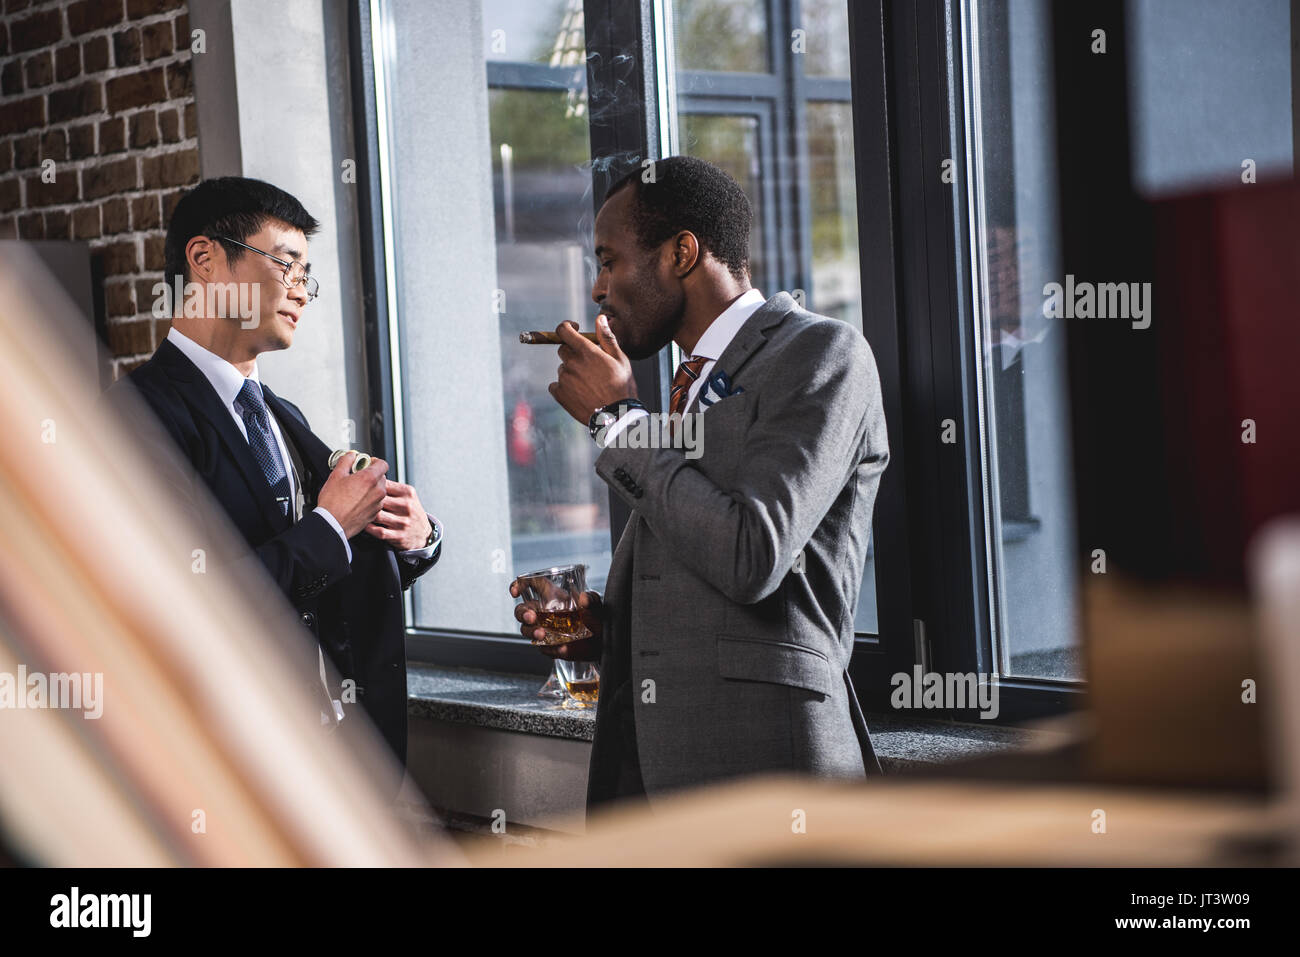 Zuversichtlich Geschäftsmann Alkohol trinken und rauchen Zigarre, während Kollege ausblenden Geld in Anzug pocket, Business Team Meeting Stockfoto